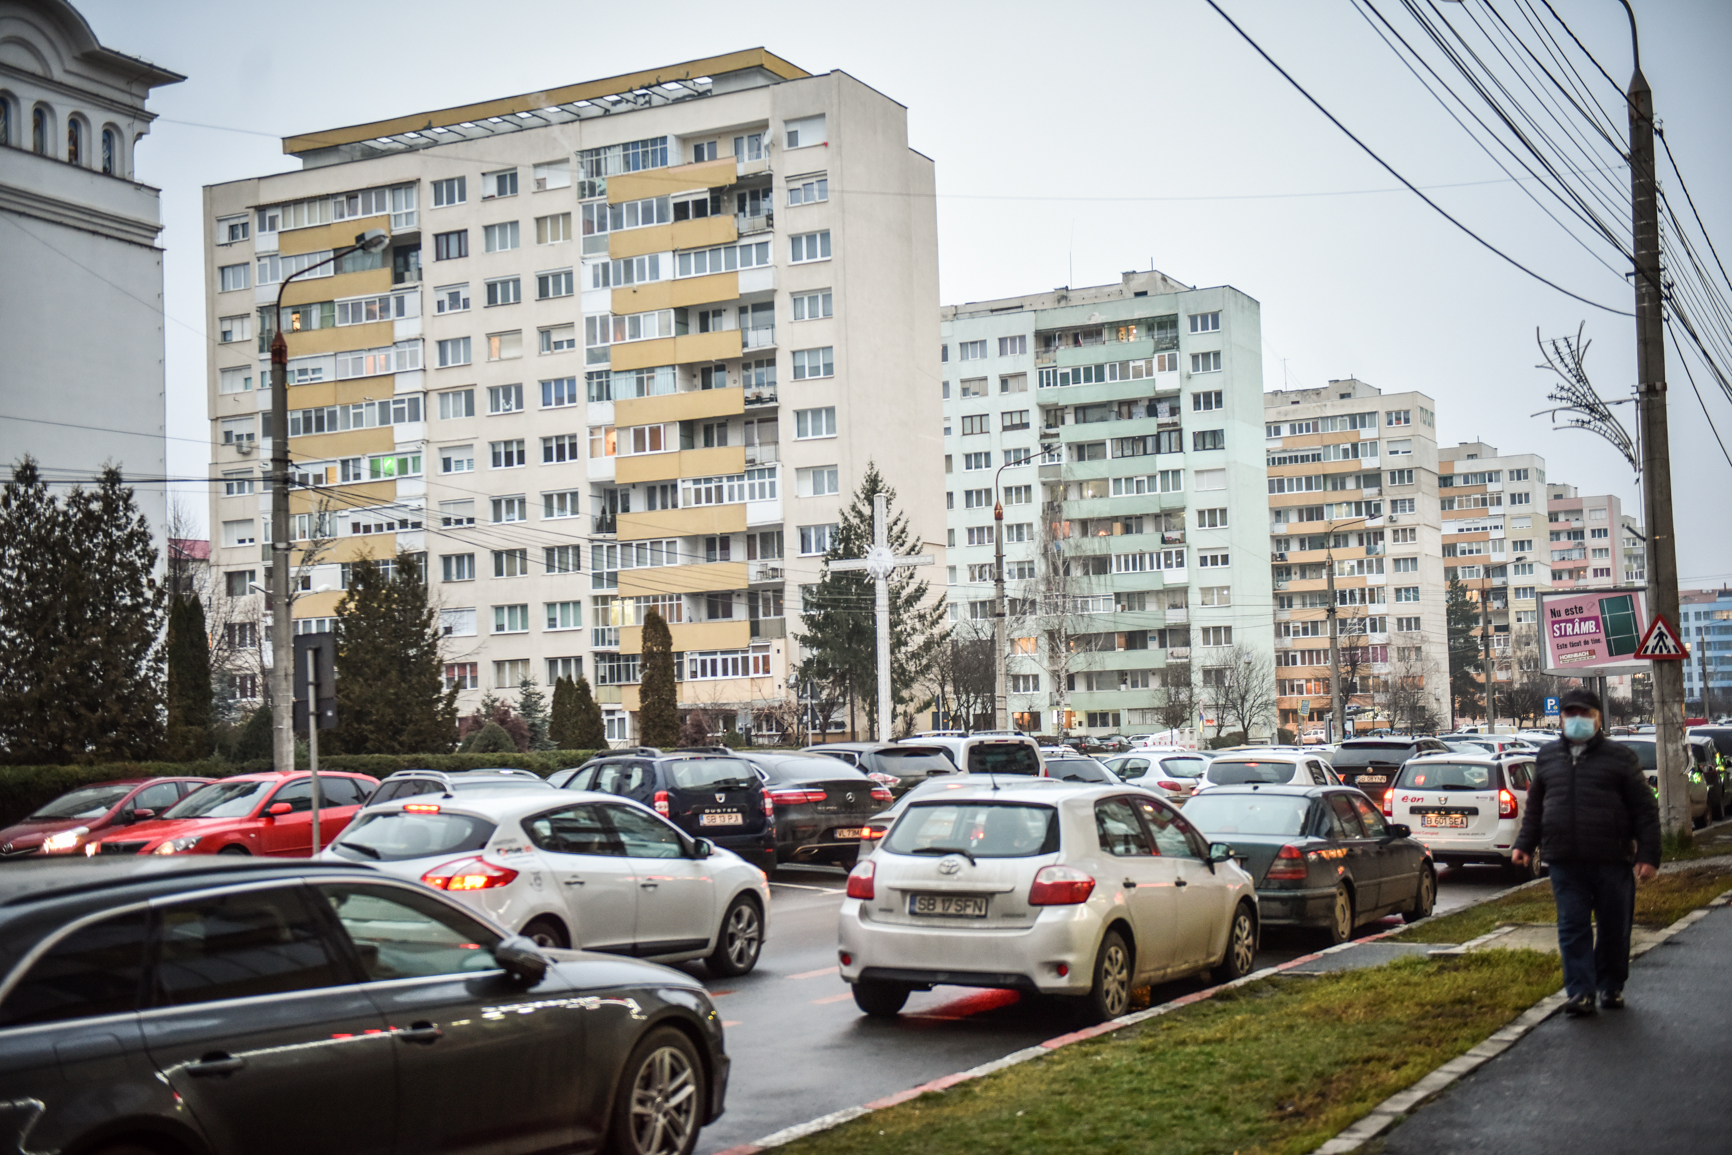 Refugiații care ajung în Sibiu se lovesc de comoditatea unor proprietari. Expert imobiliar: ”Unii au bani, dar proprietarii refuză să le închirieze pe termen scurt”